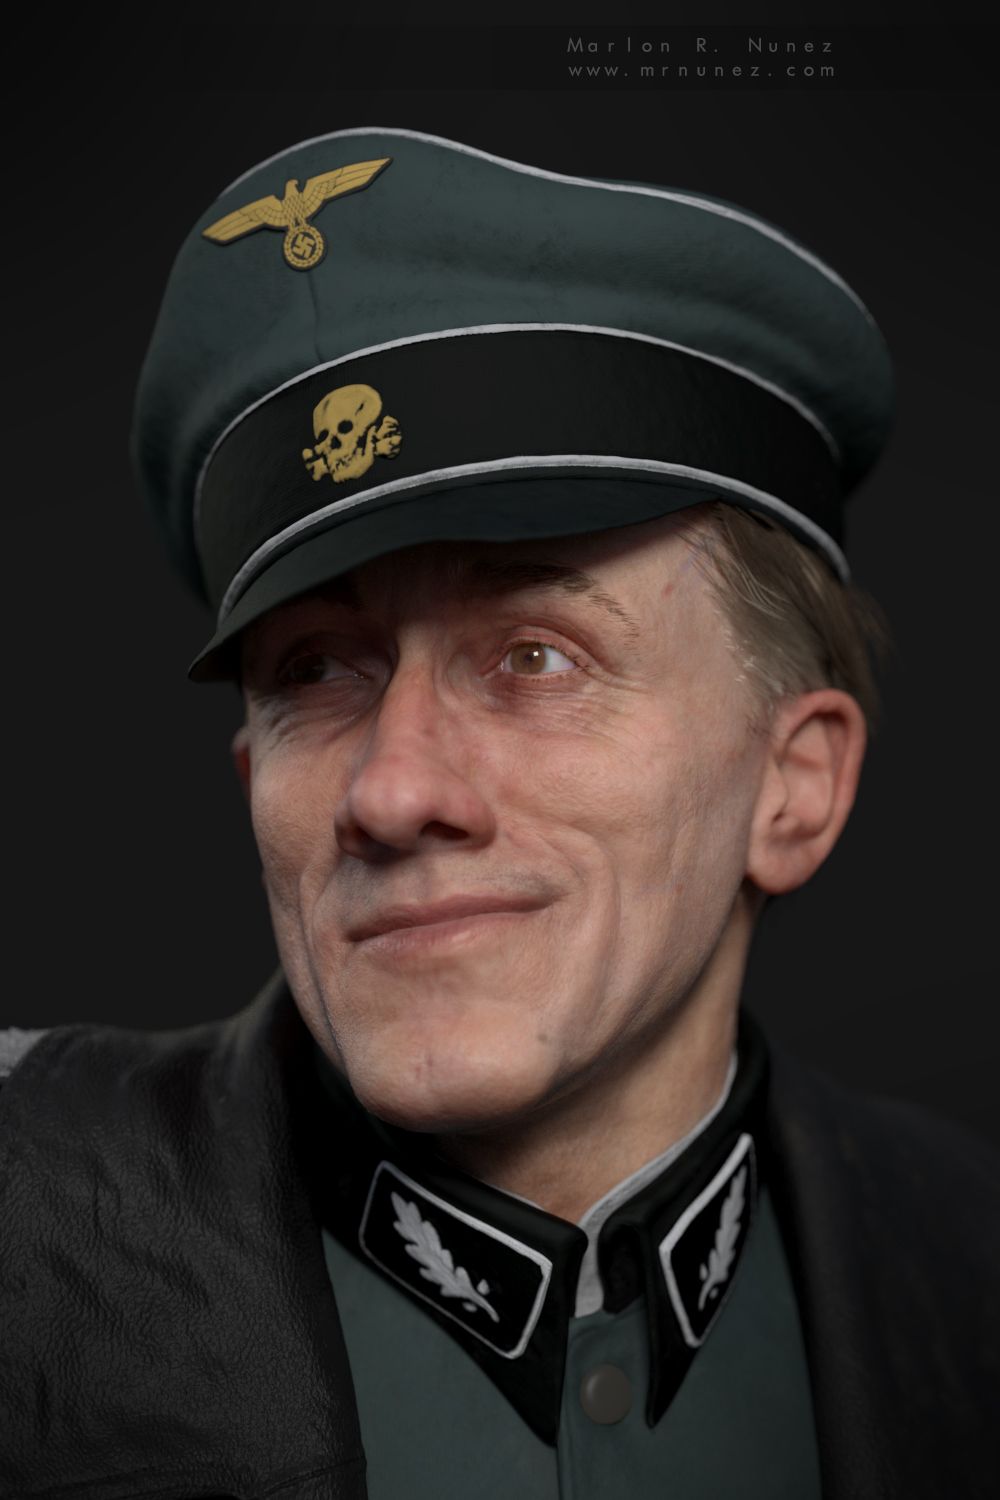 Colonel Hans Landa